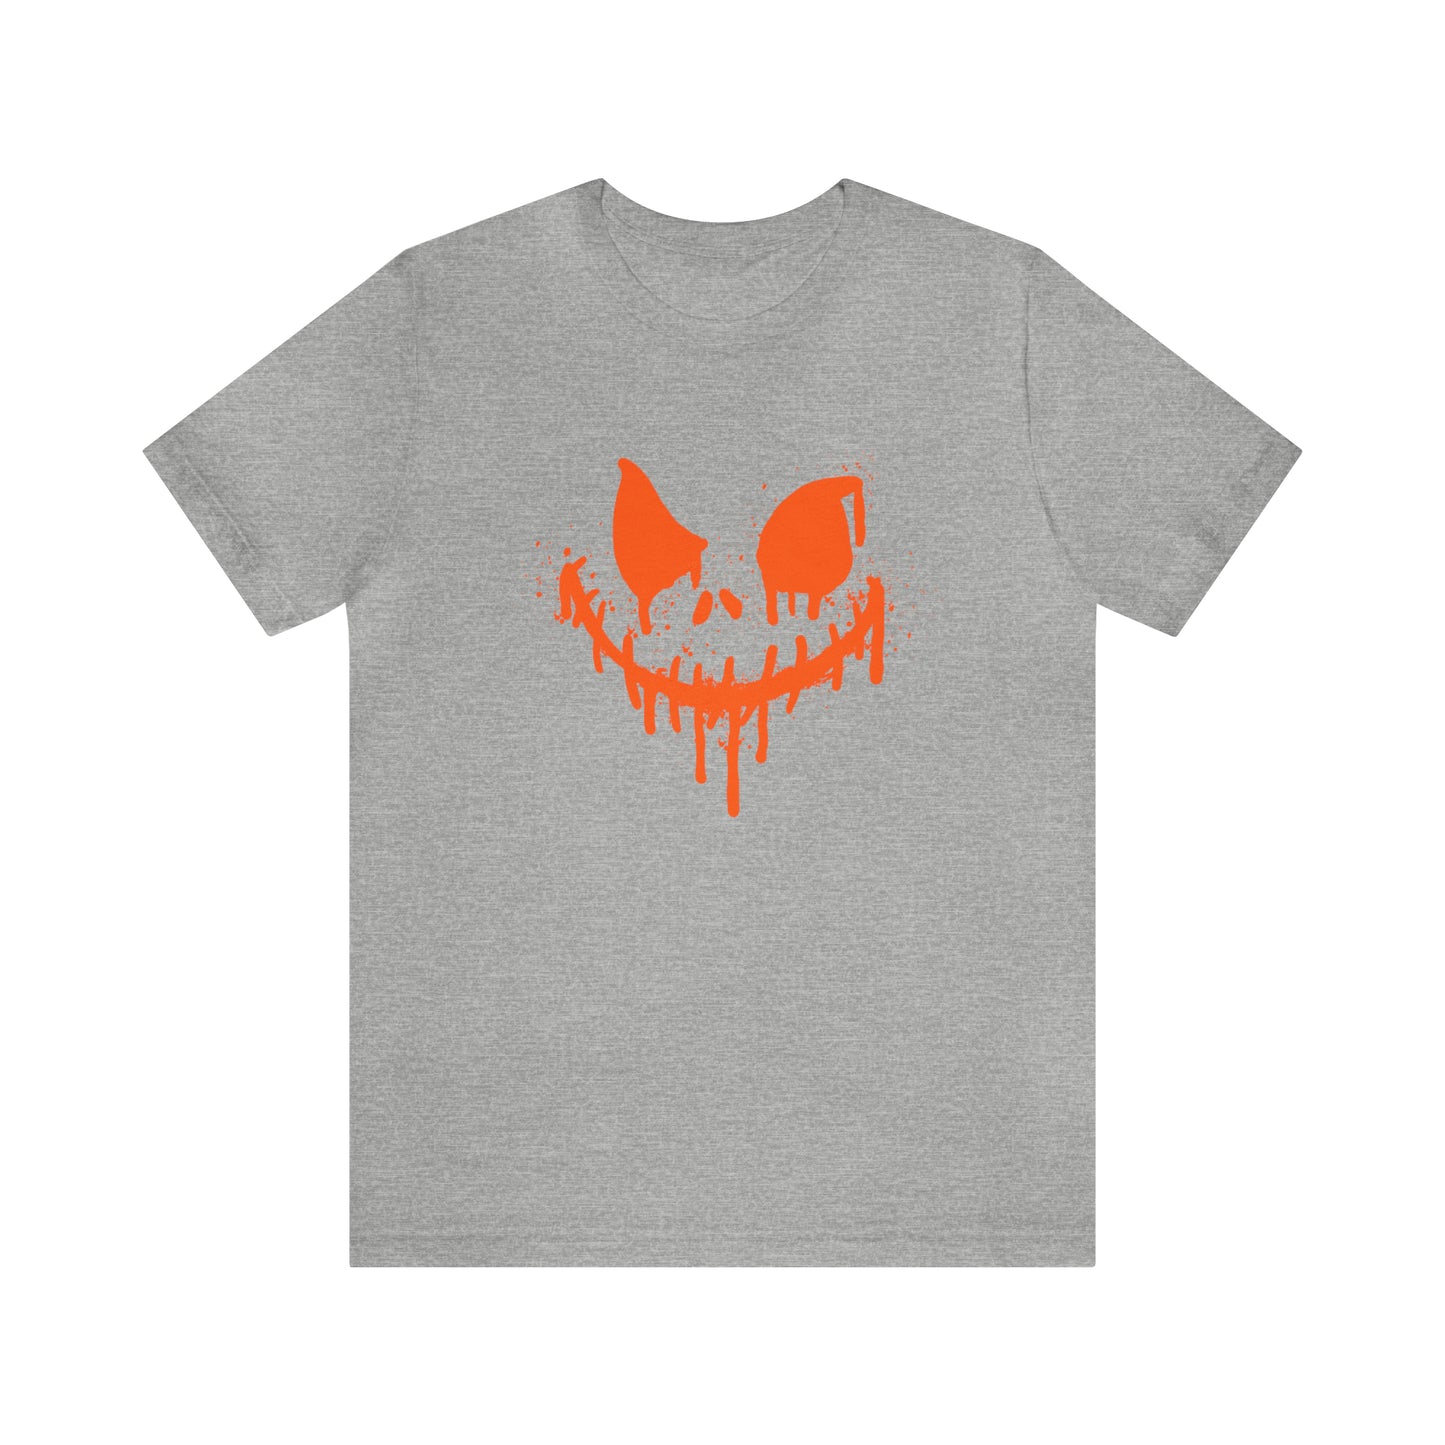 Unisex Jersey Short Sleeve Tee - Halloween Horror face - 01